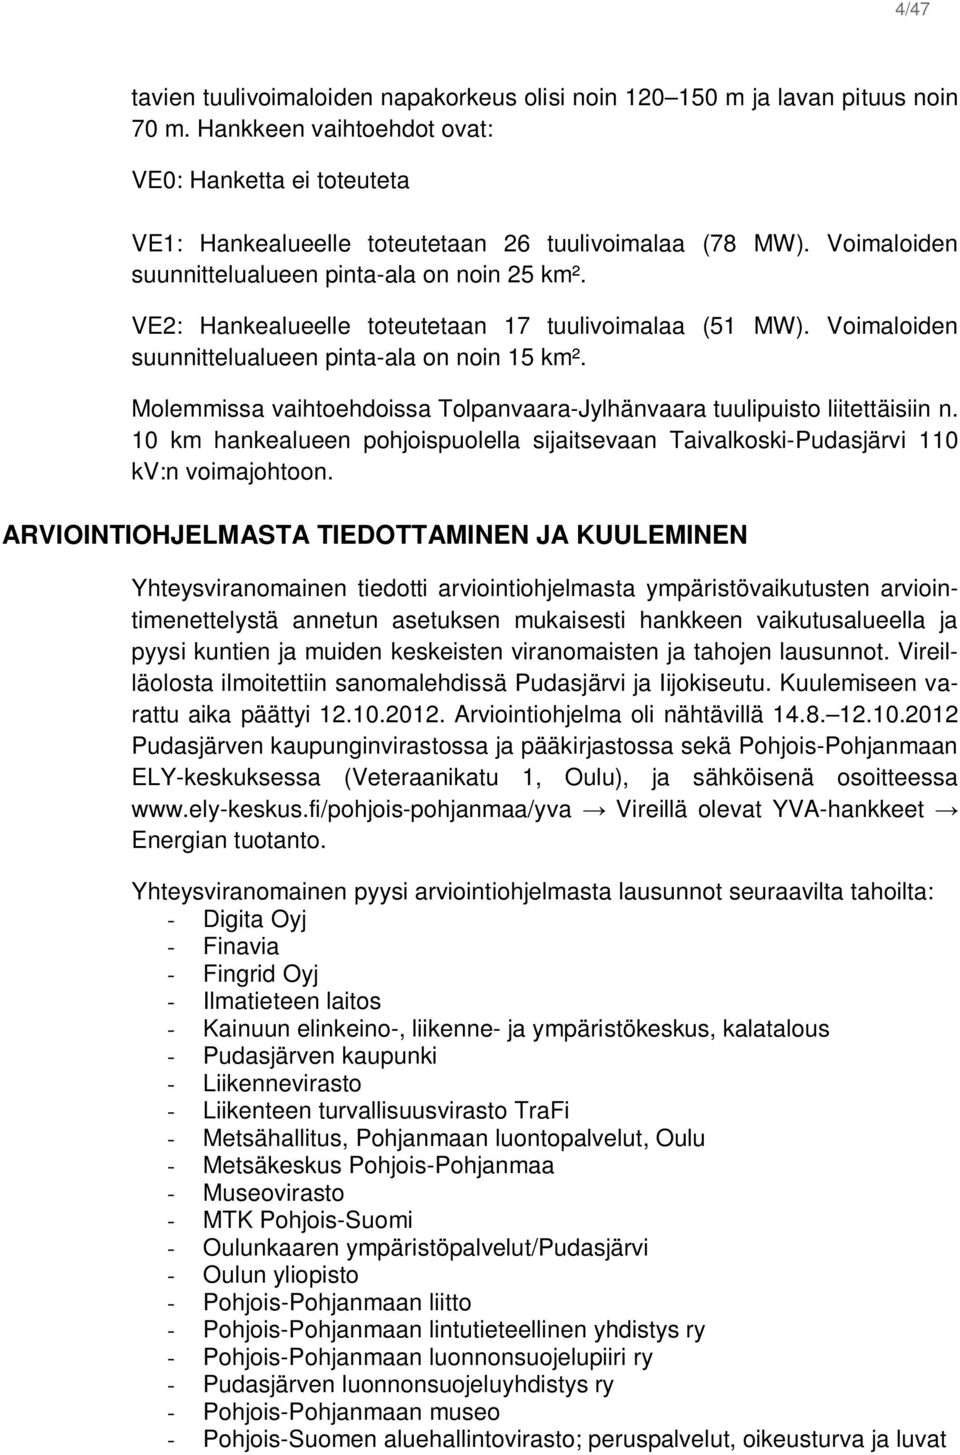 Molemmissa vaihtoehdoissa Tolpanvaara-Jylhänvaara tuulipuisto liitettäisiin n. 10 km hankealueen pohjoispuolella sijaitsevaan Taivalkoski-Pudasjärvi 110 kv:n voimajohtoon.